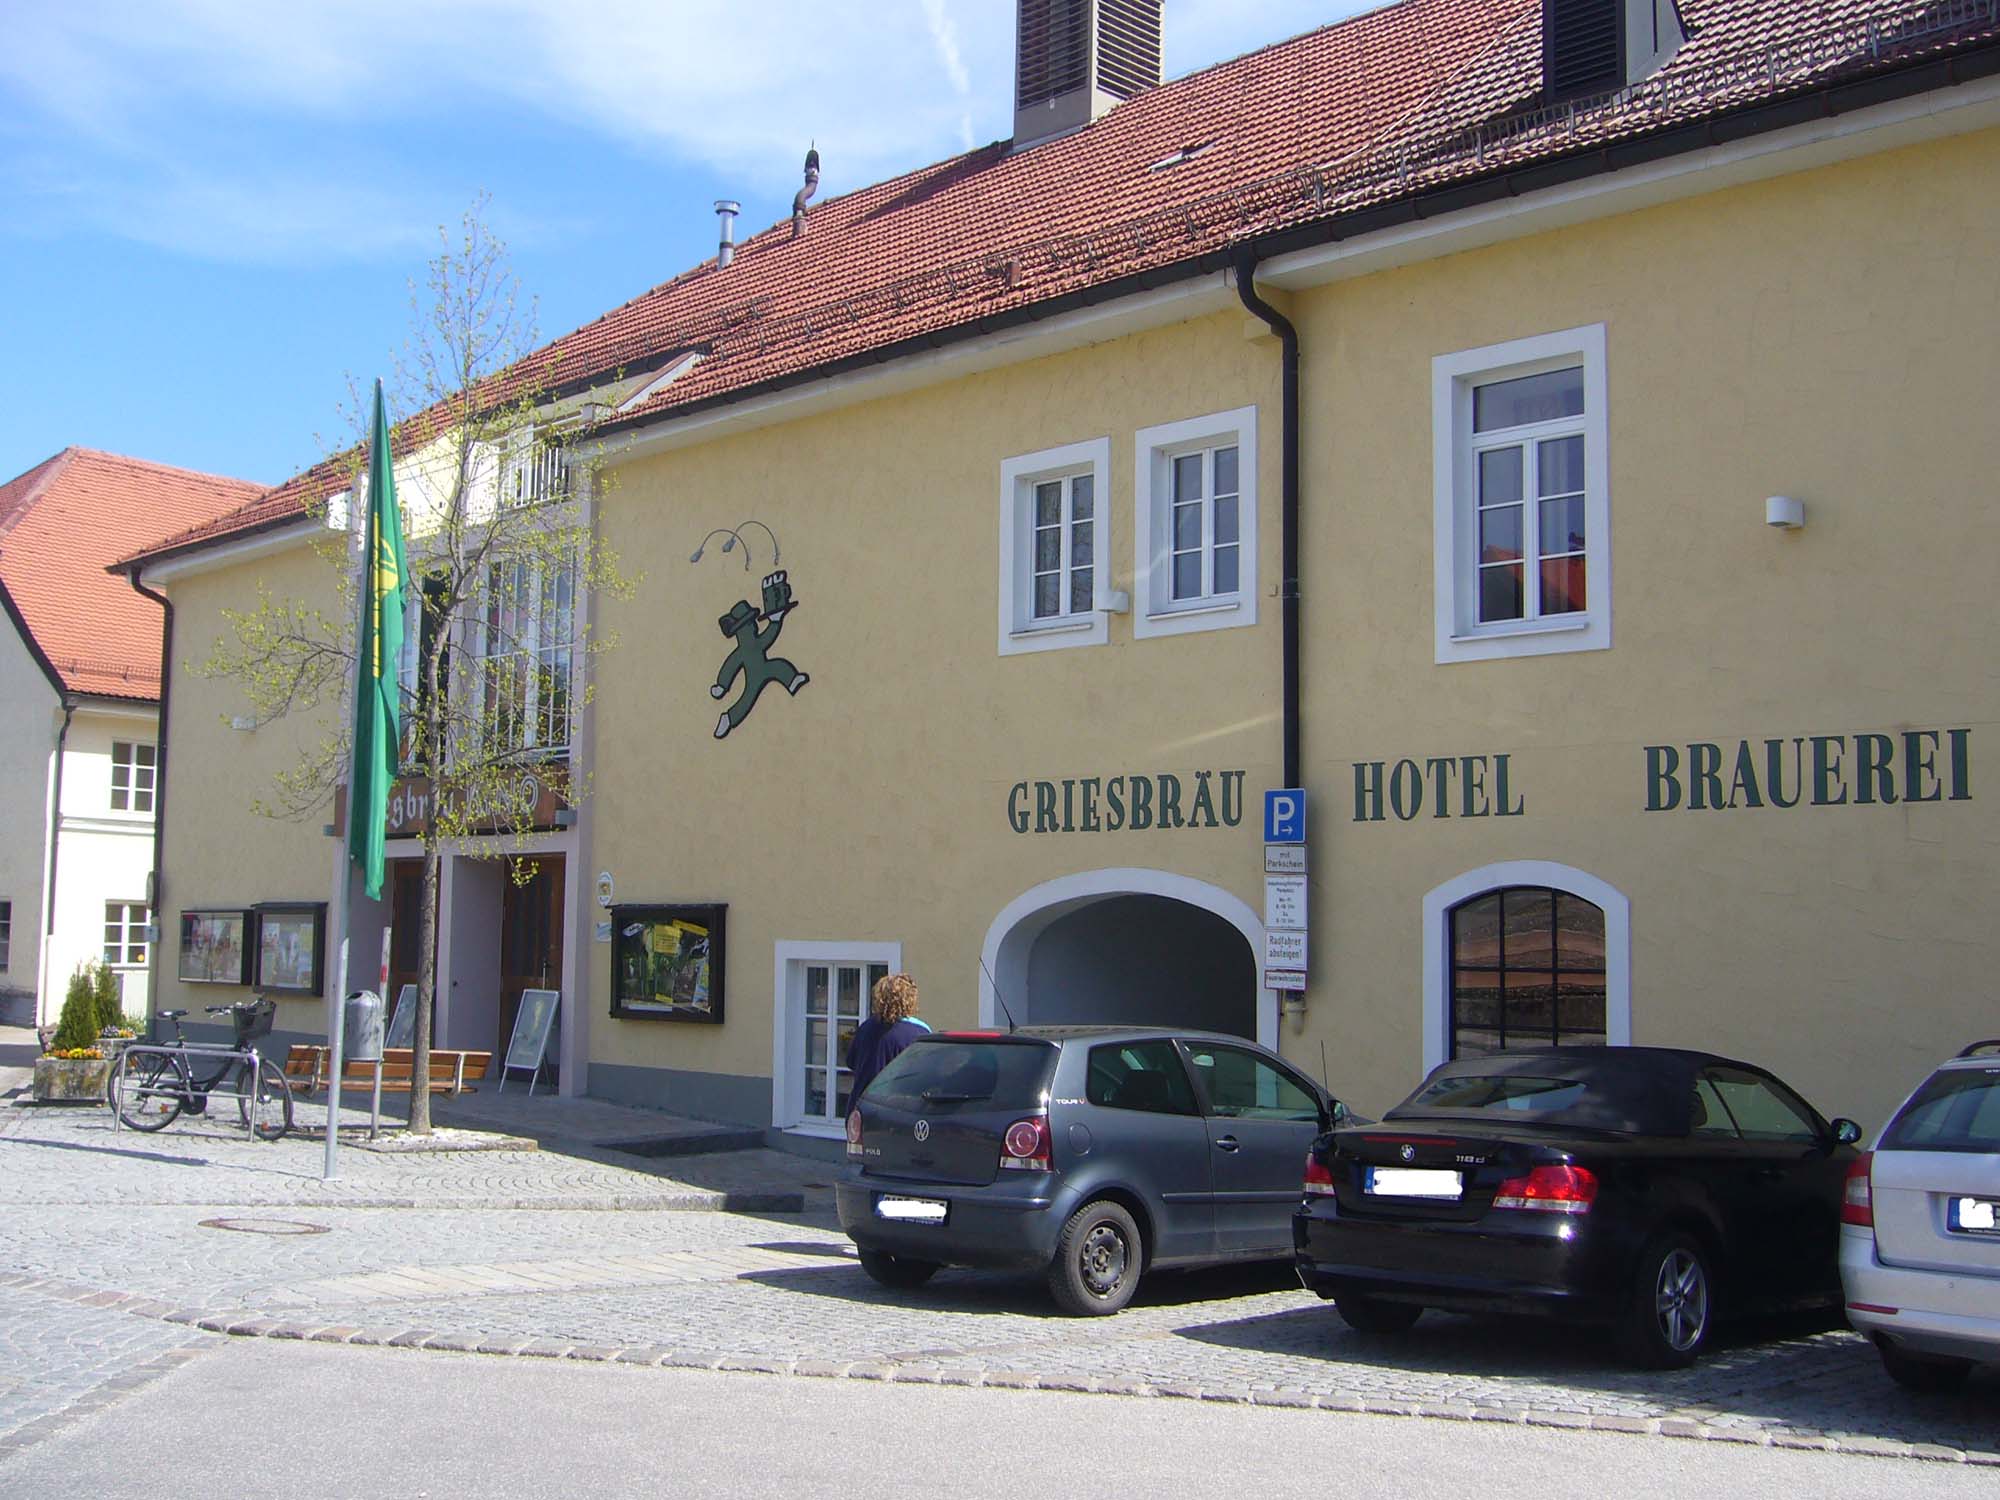 Hotel Griesbräu, Murnau.
